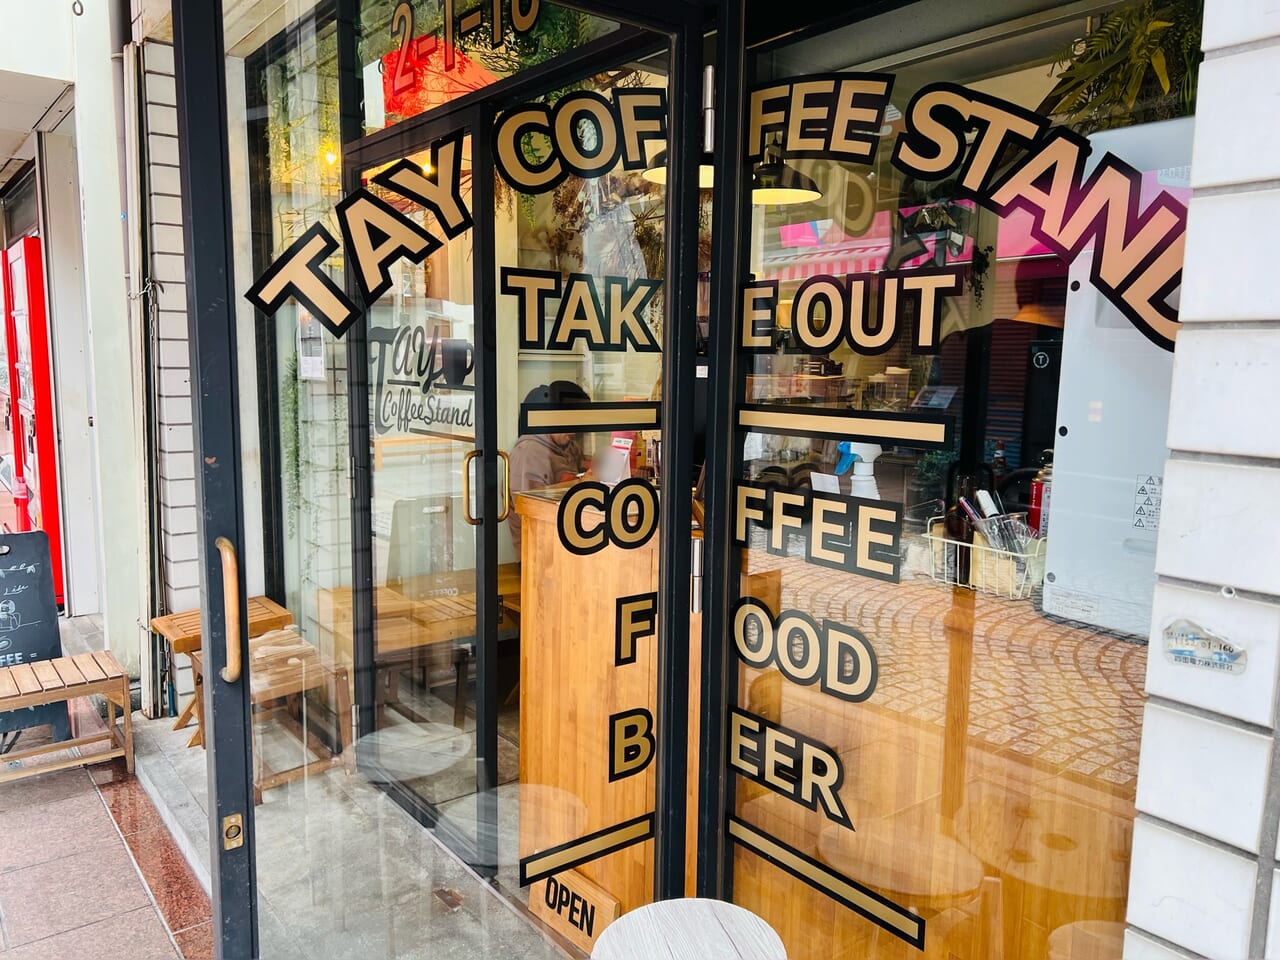 2024年2月15日にリニューアルのために閉店する「TAY COFFEE STAND（タイコーヒースタンド」の外観